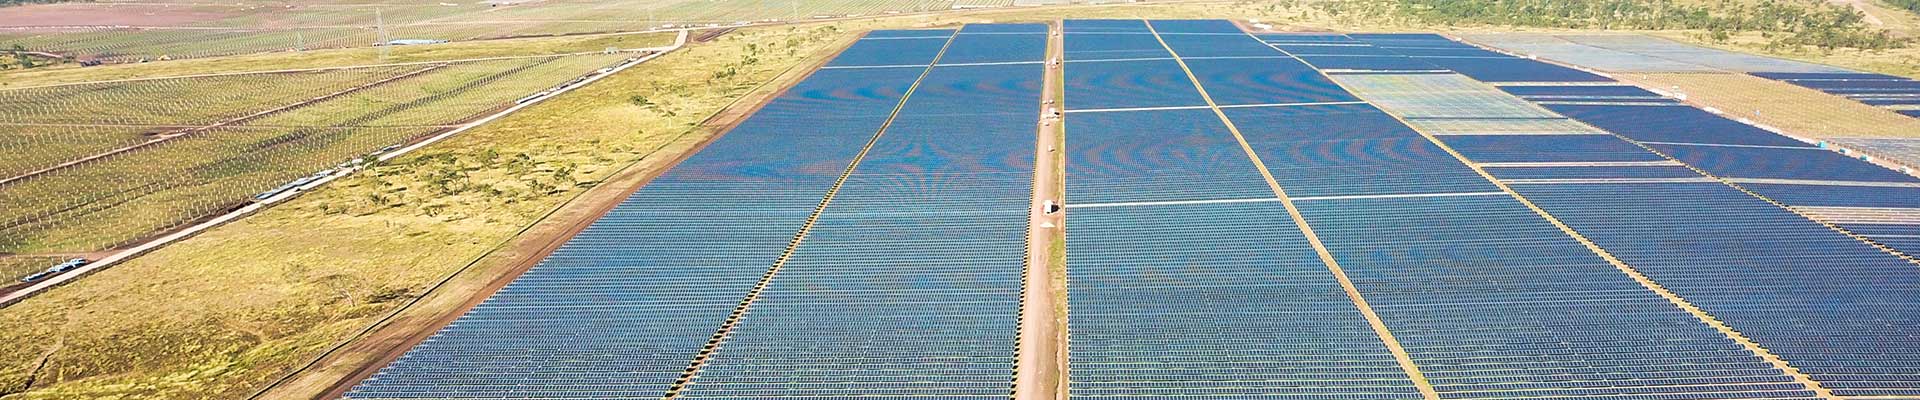 Image - Whitsunday Solar Farm